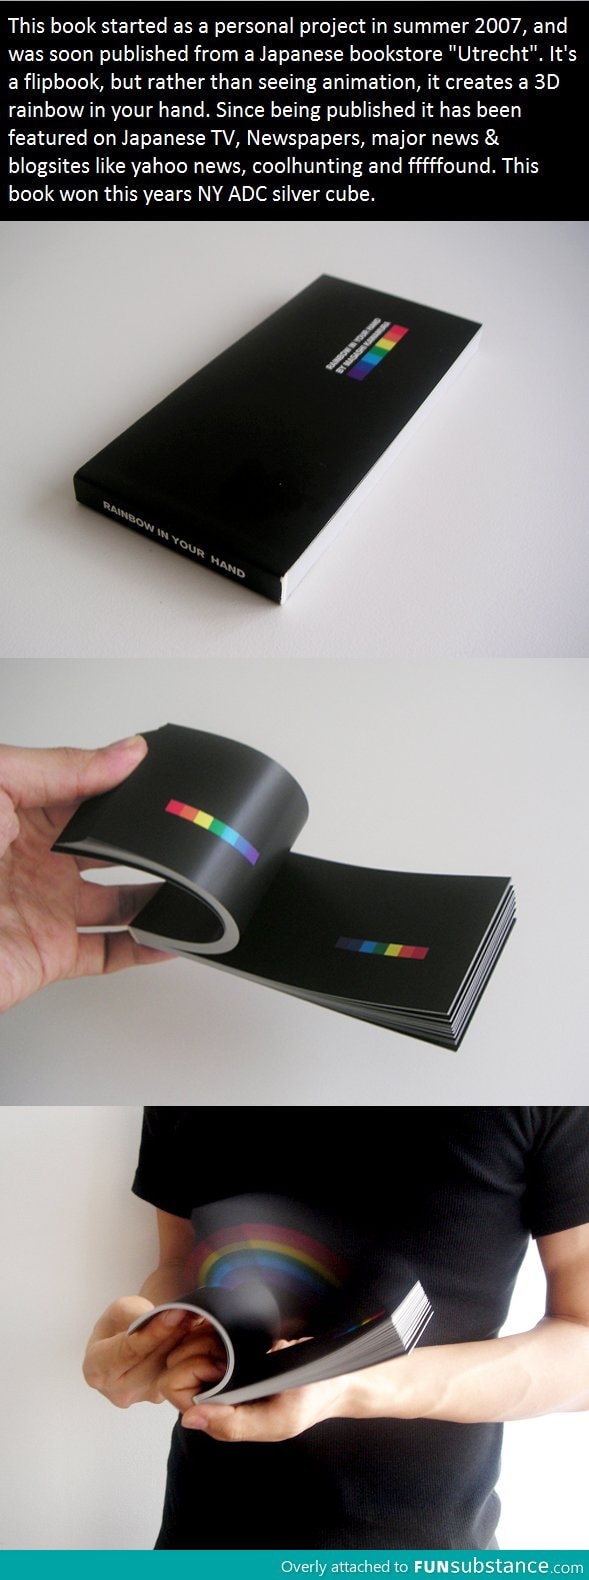 The rainbow book